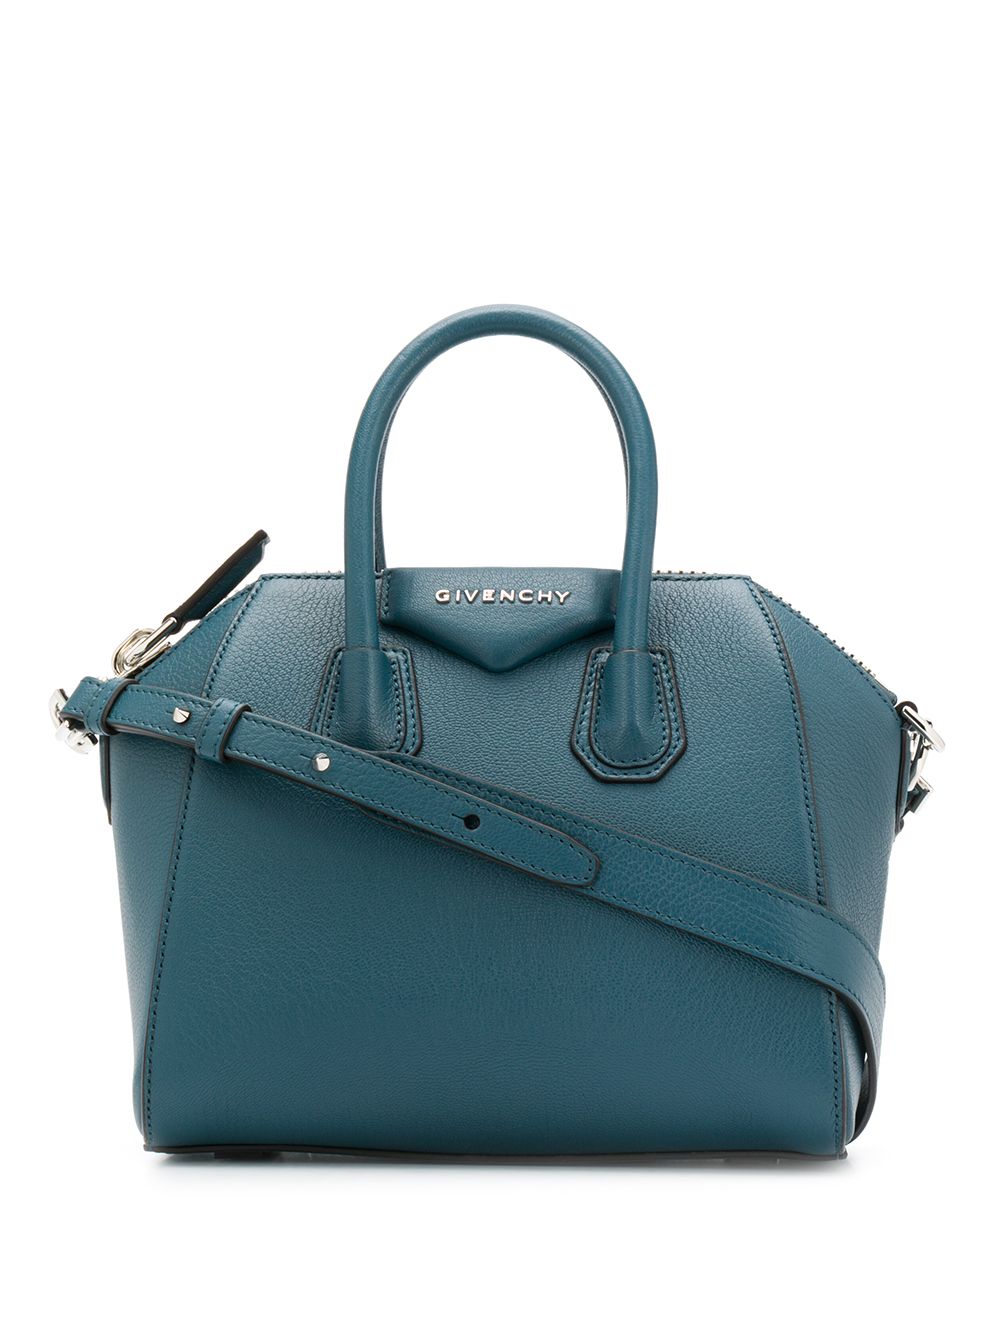 фото Givenchy сумка-тоут antigona размера мини